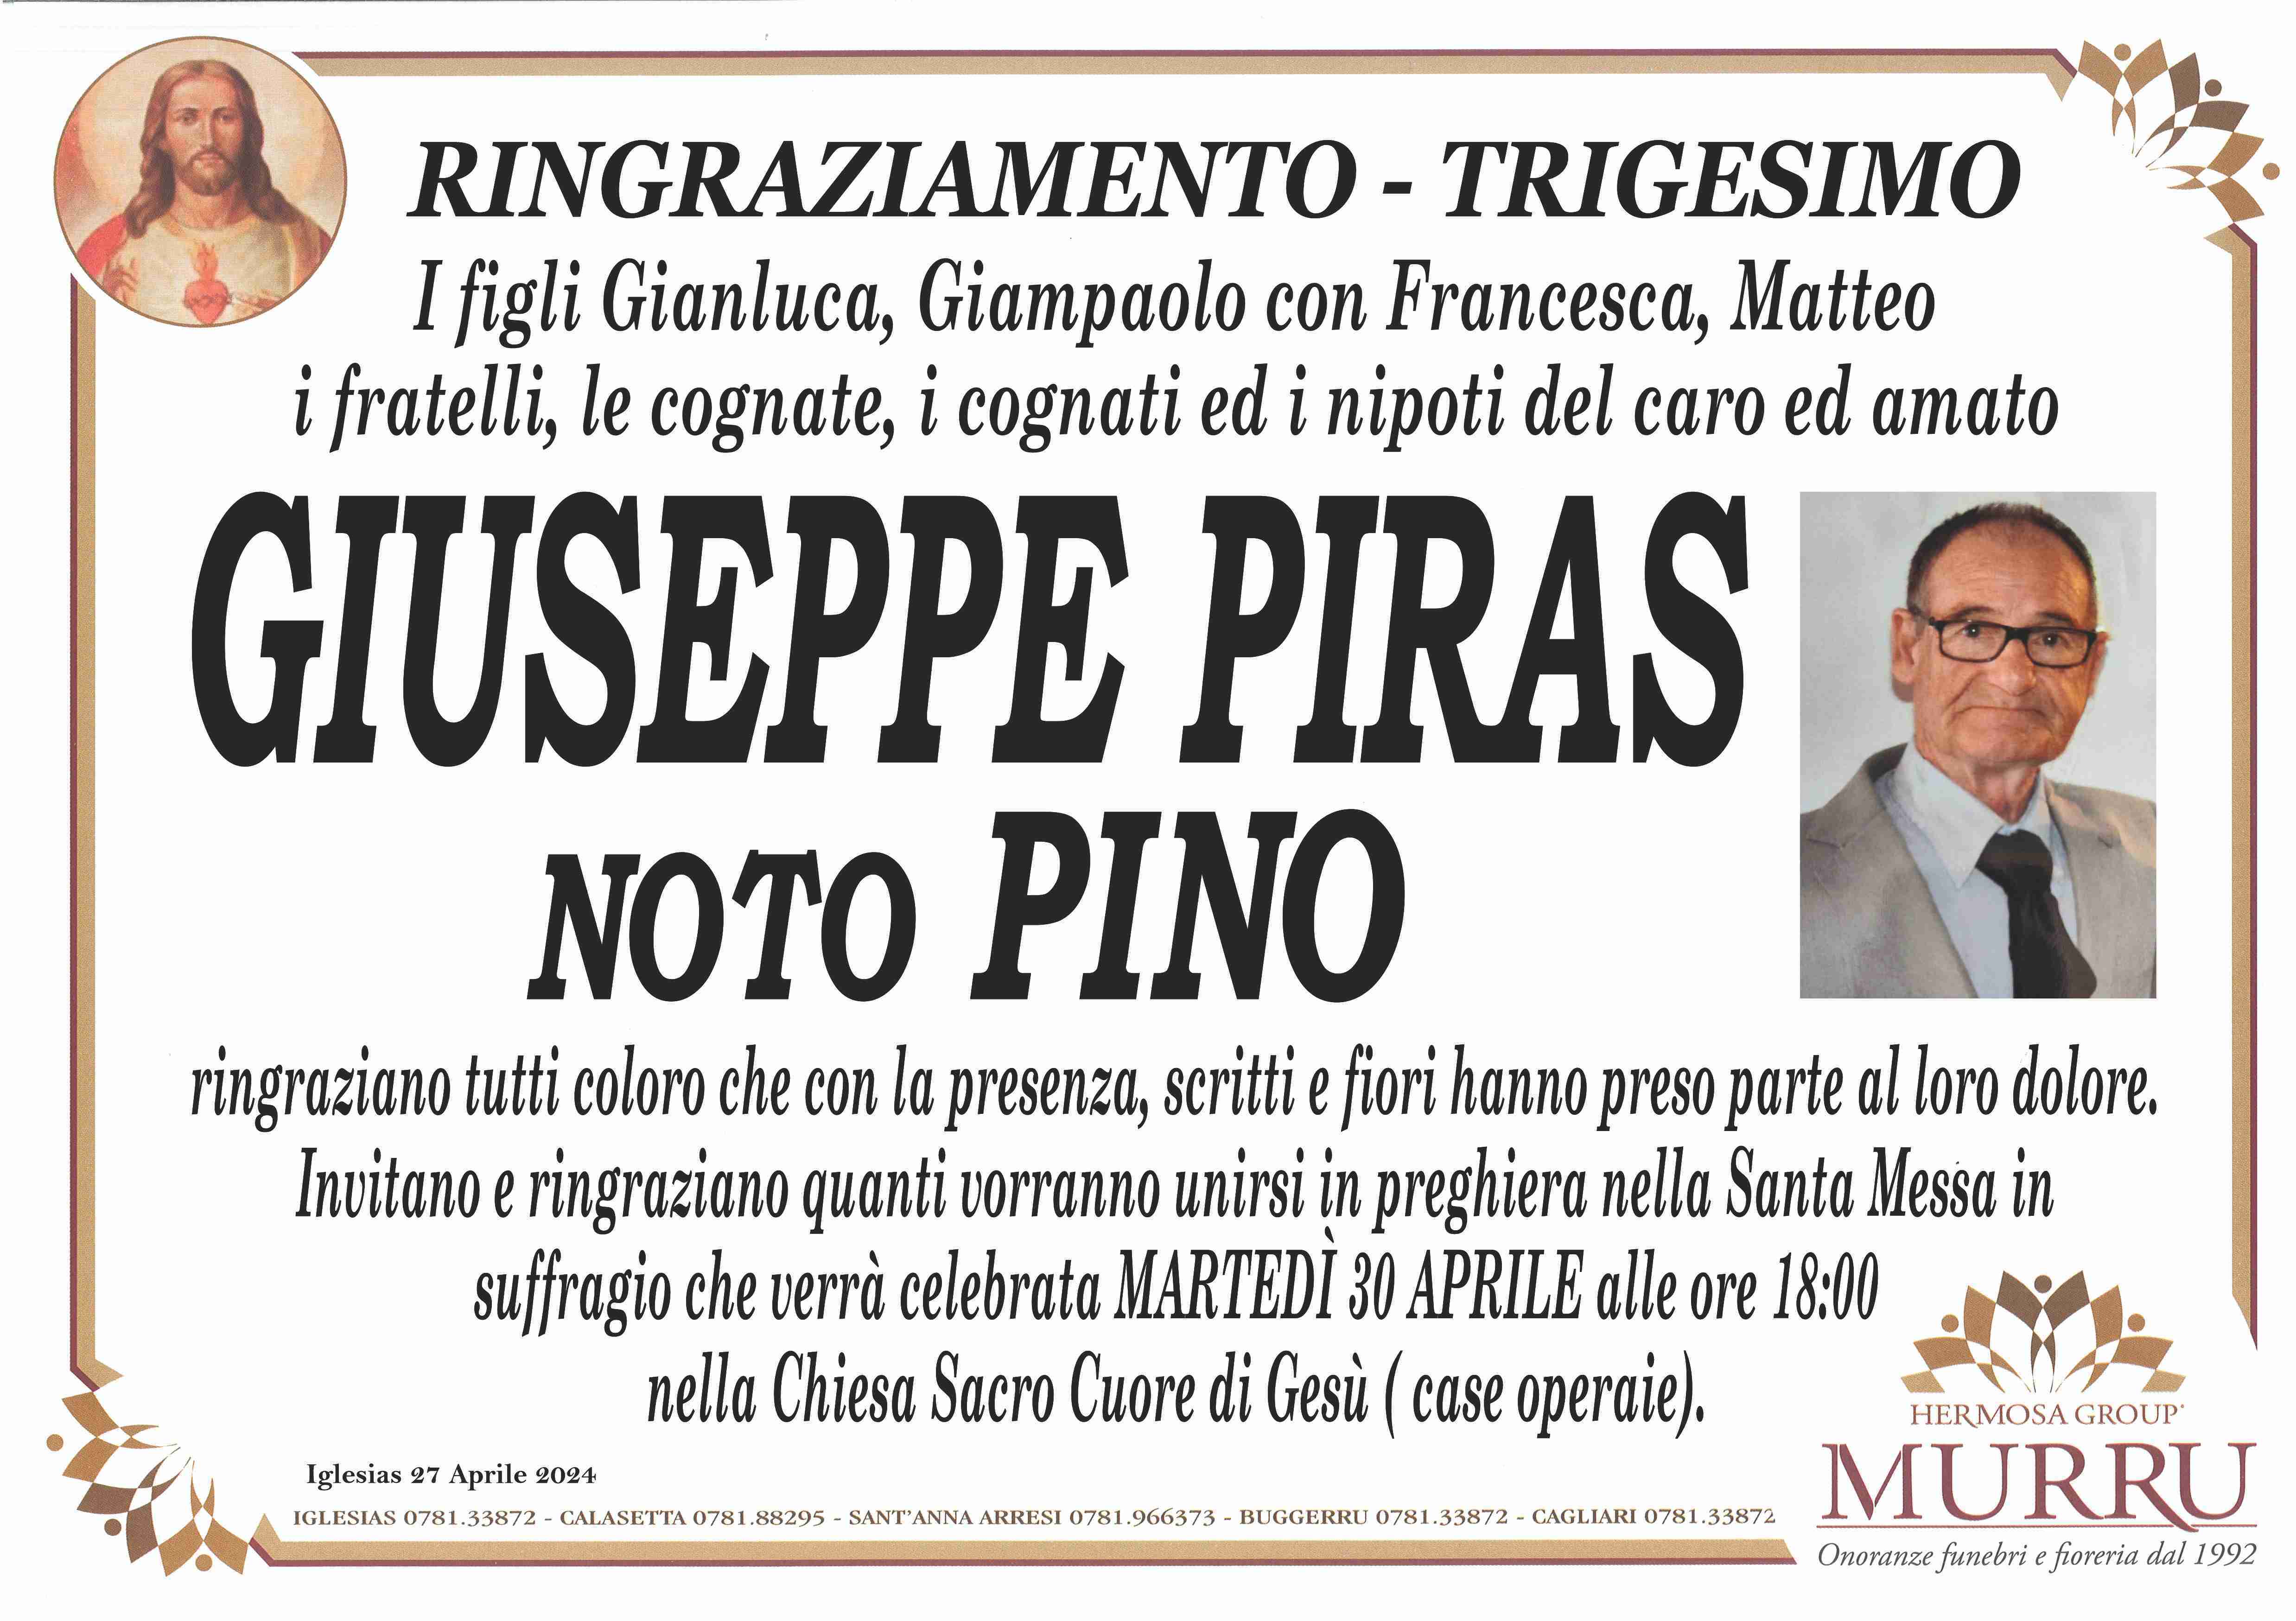 Giuseppe Piras noto Pino